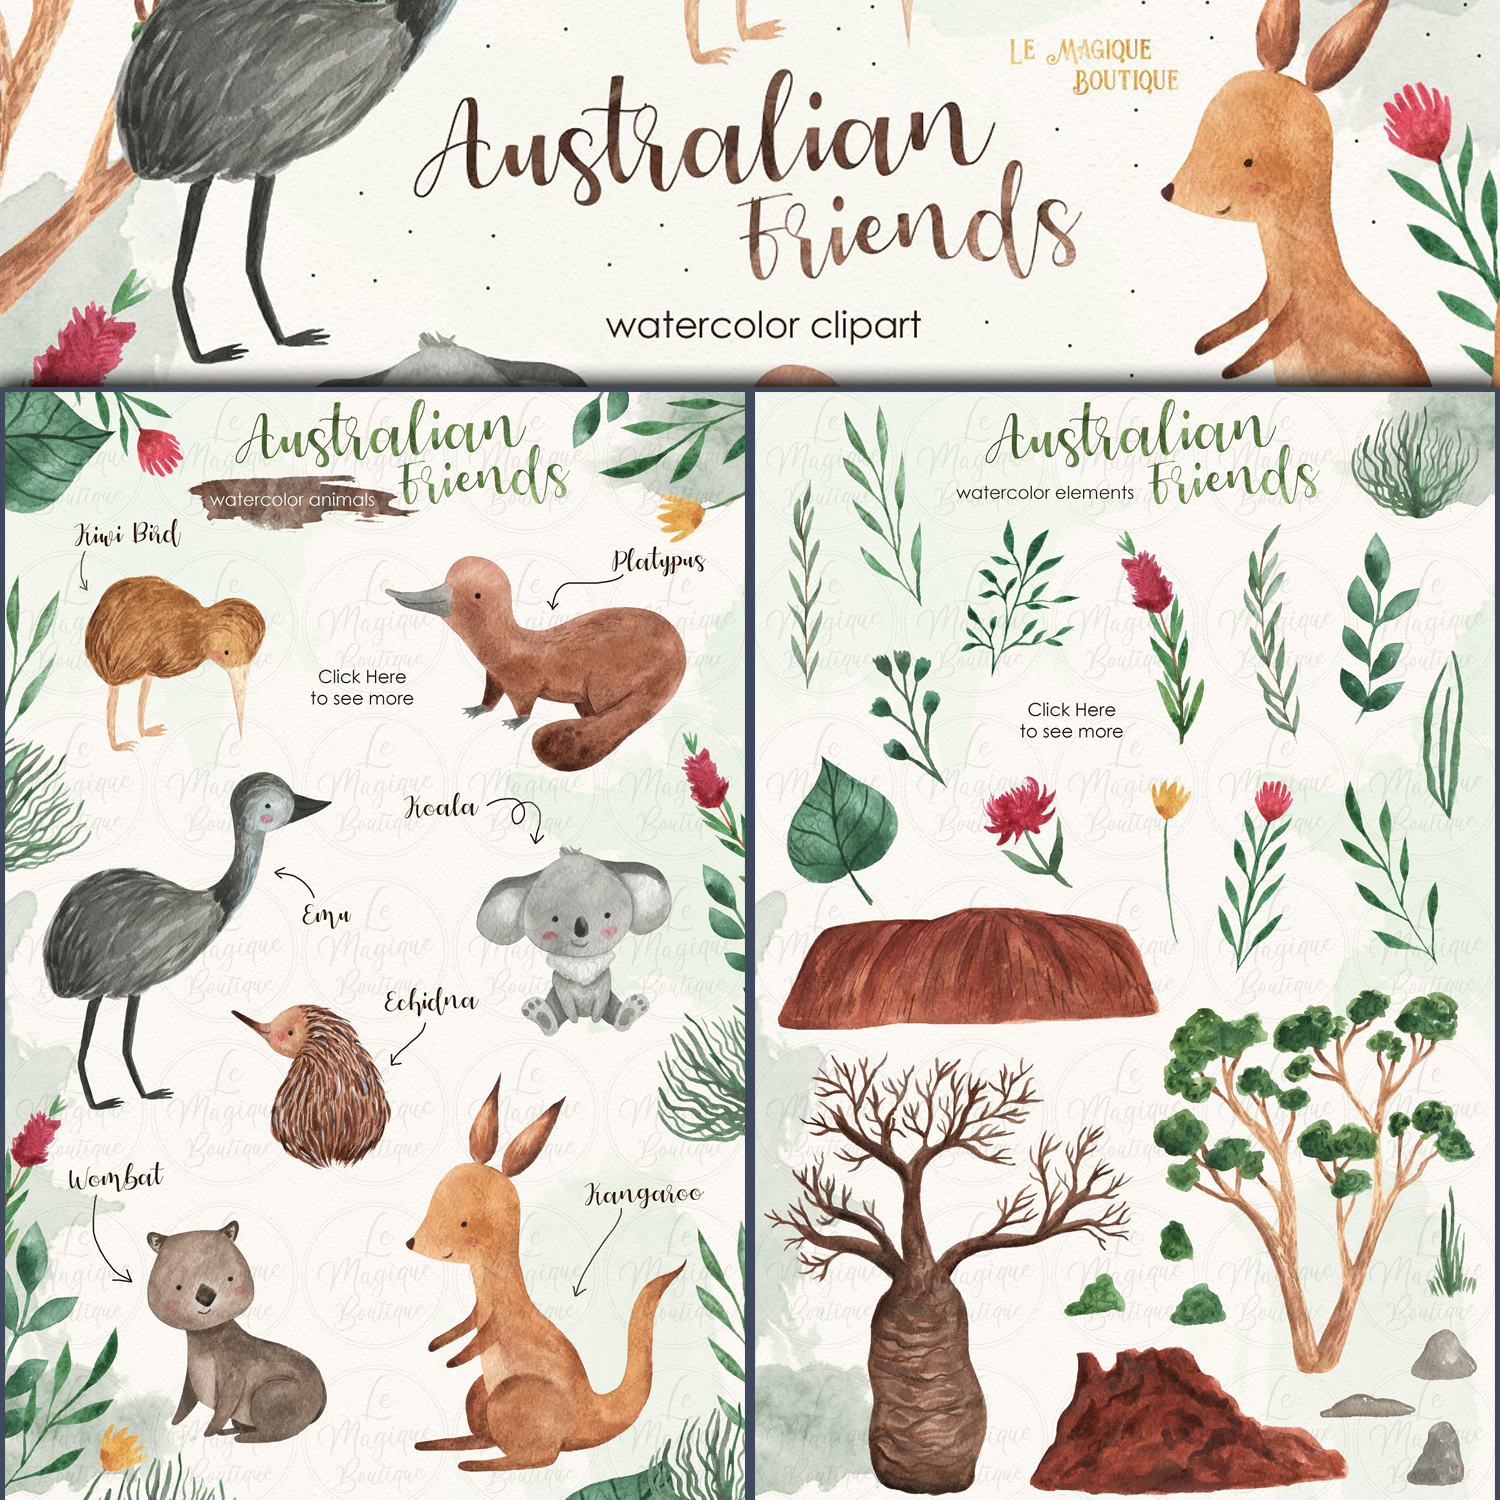 Australian Friends Watercolor Set cover image.